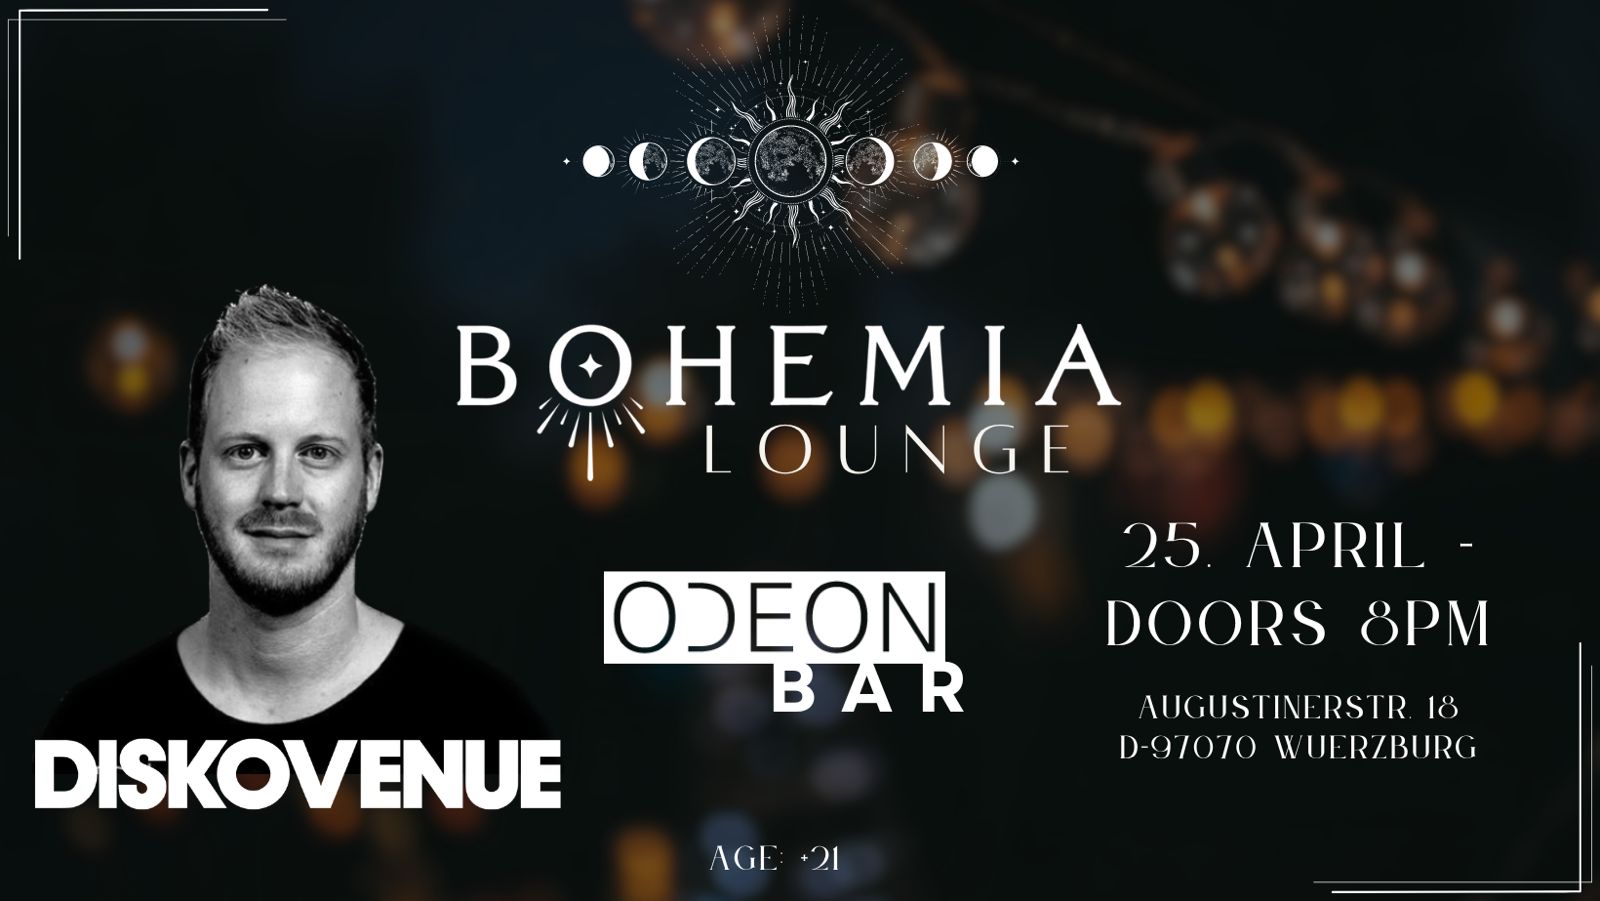 Bohemia lounge 2